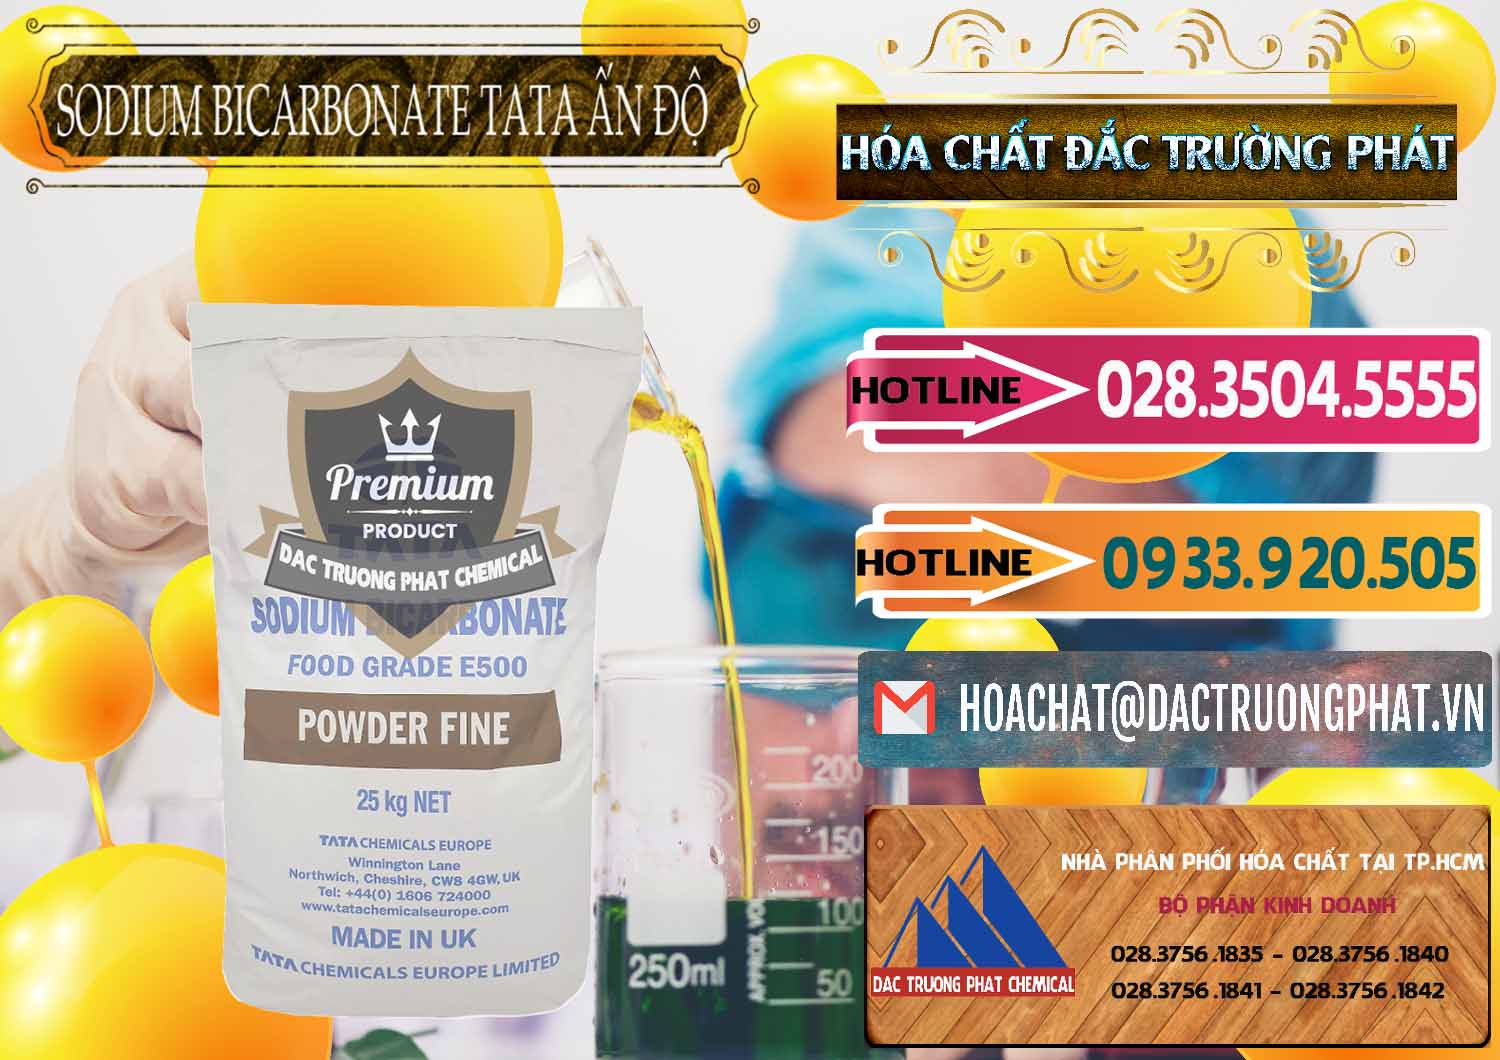 Đơn vị chuyên kinh doanh & bán Sodium Bicarbonate – Bicar NaHCO3 E500 Thực Phẩm Food Grade Tata Ấn Độ India - 0261 - Cung cấp & phân phối hóa chất tại TP.HCM - dactruongphat.vn